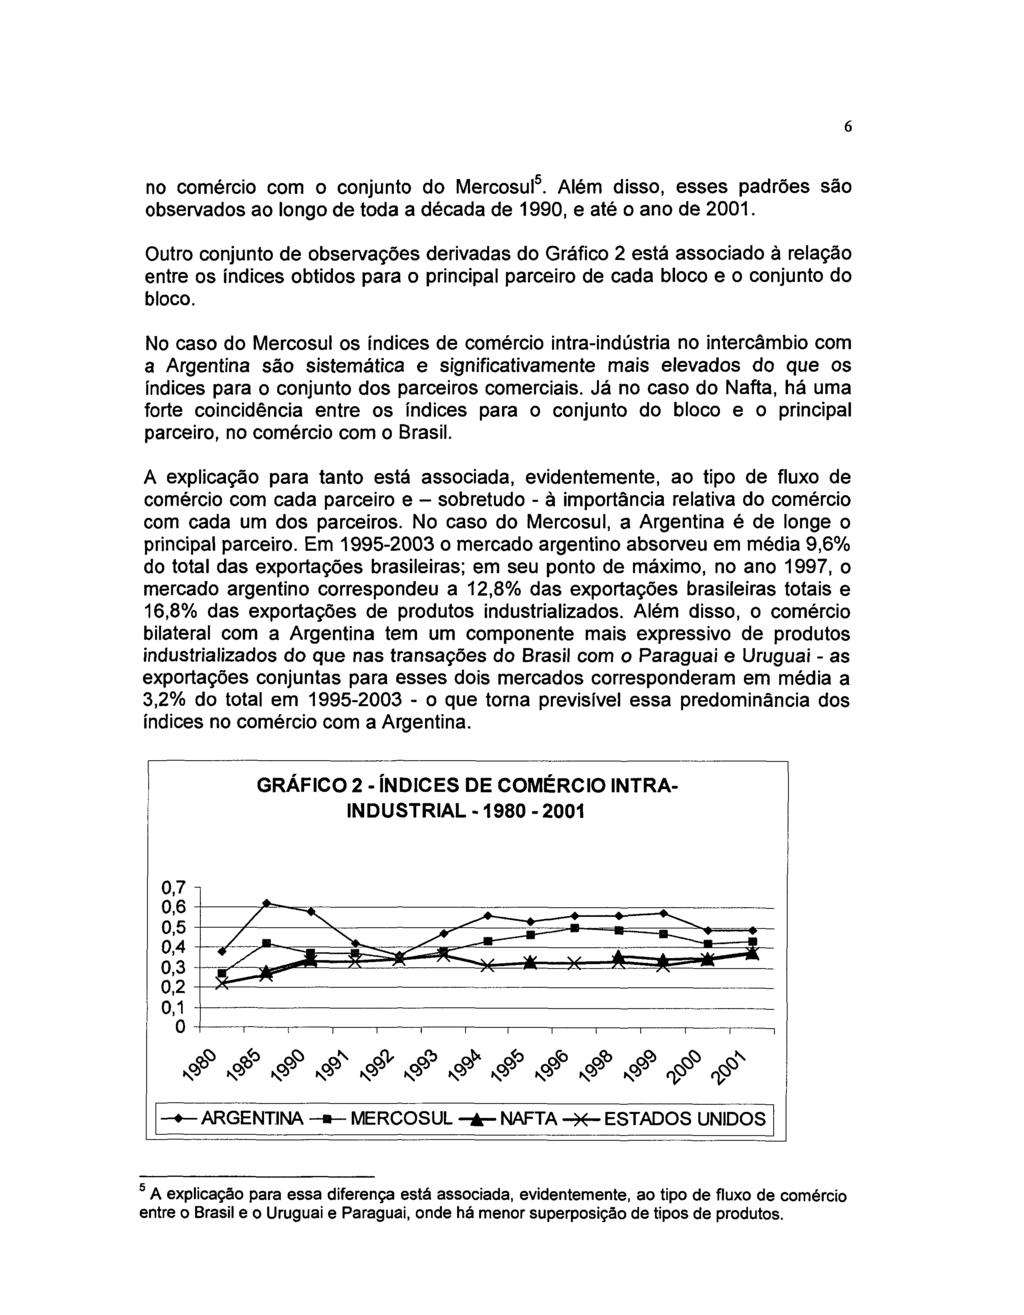 no comércio com o conjunto do Mercosul. Além disso, esses padrões são observados ao longo de toda a década de 1990, e até o ano de 2001.